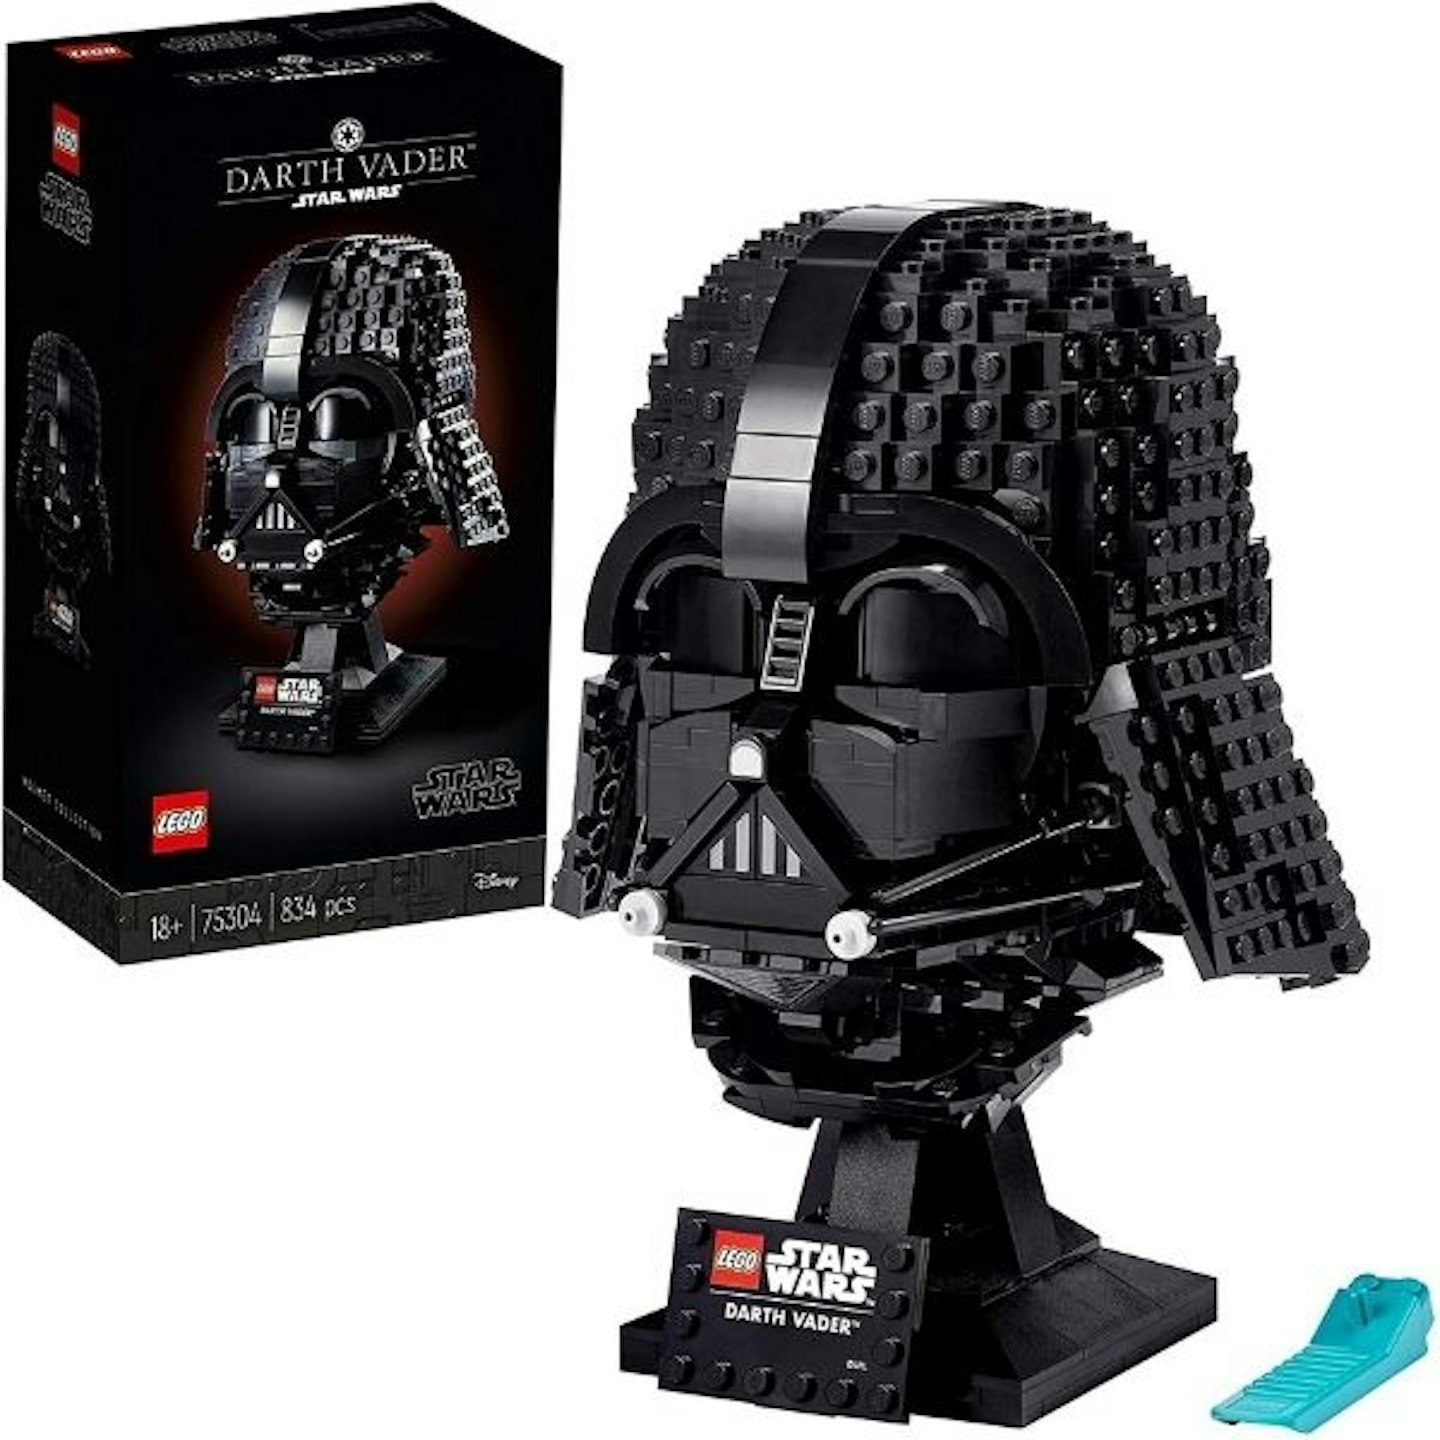 LEGO 75304 Star Wars Darth Vader Helmet Display